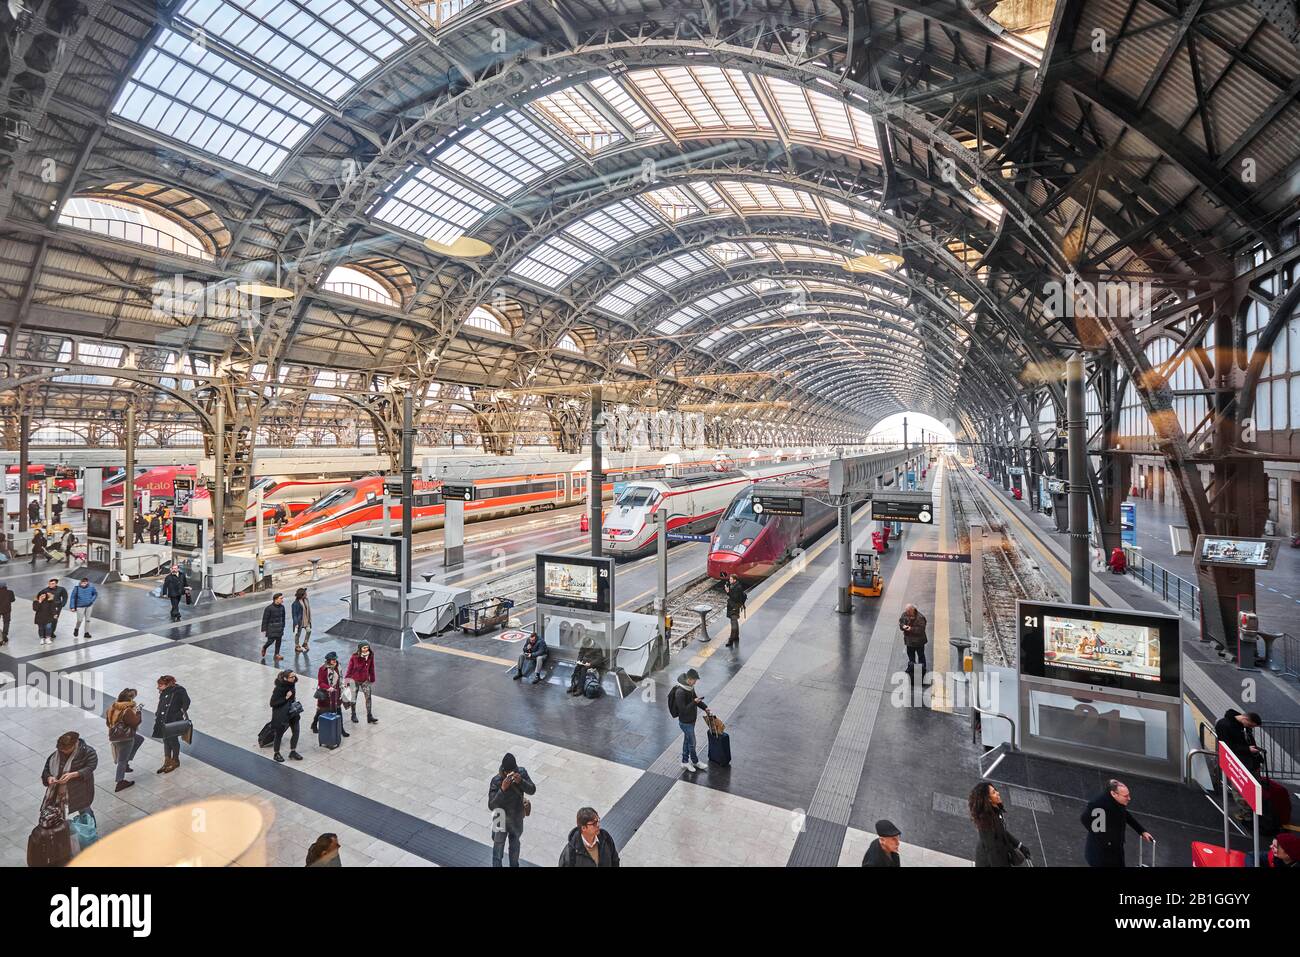 Milan, Italie - 21 Janvier 2019 : Vue Intérieure De La Gare Centrale De Milan. Des trains à grande vitesse modernes à la gare centrale de Milan. Concept de voyage Banque D'Images